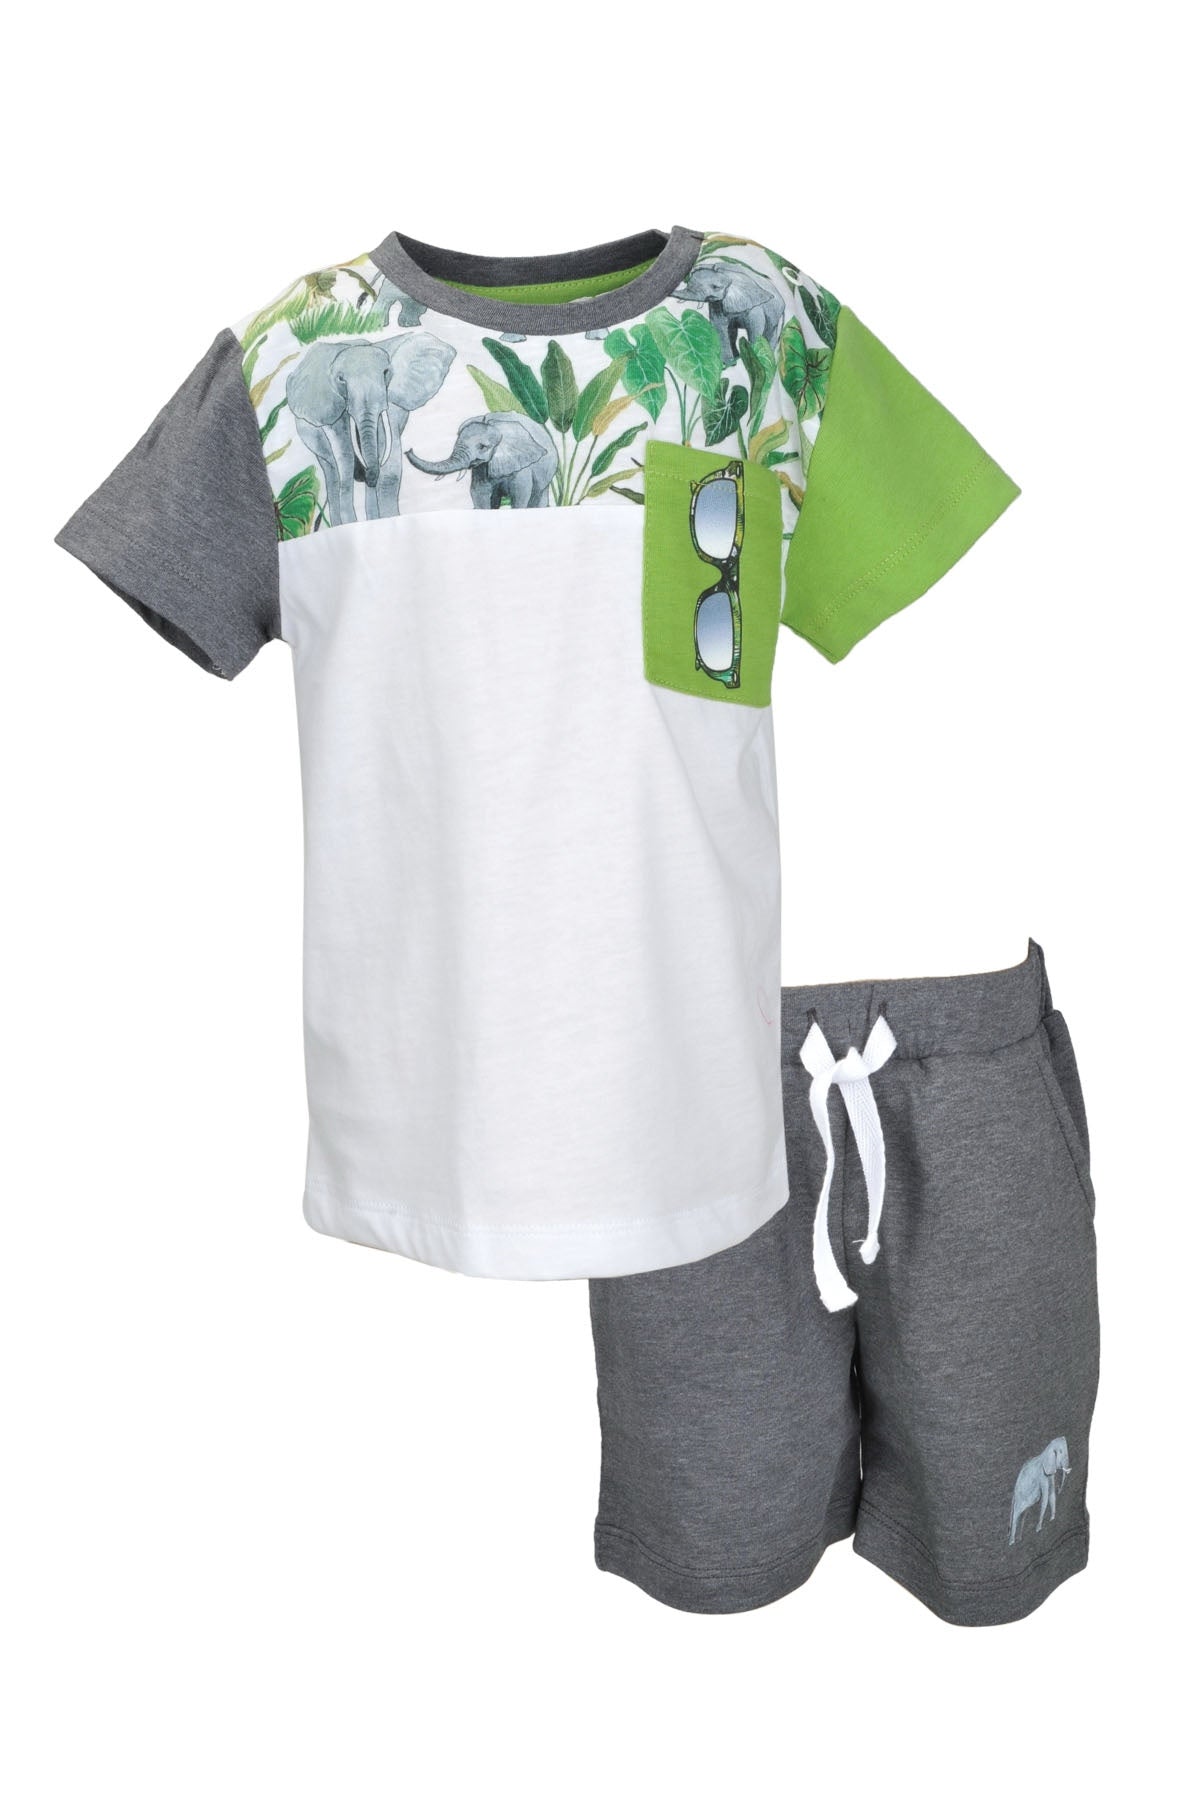 Erkek Bebek Antrasit Parçalı T-Shirt ve Şort Takım (9ay-4yaş)-0